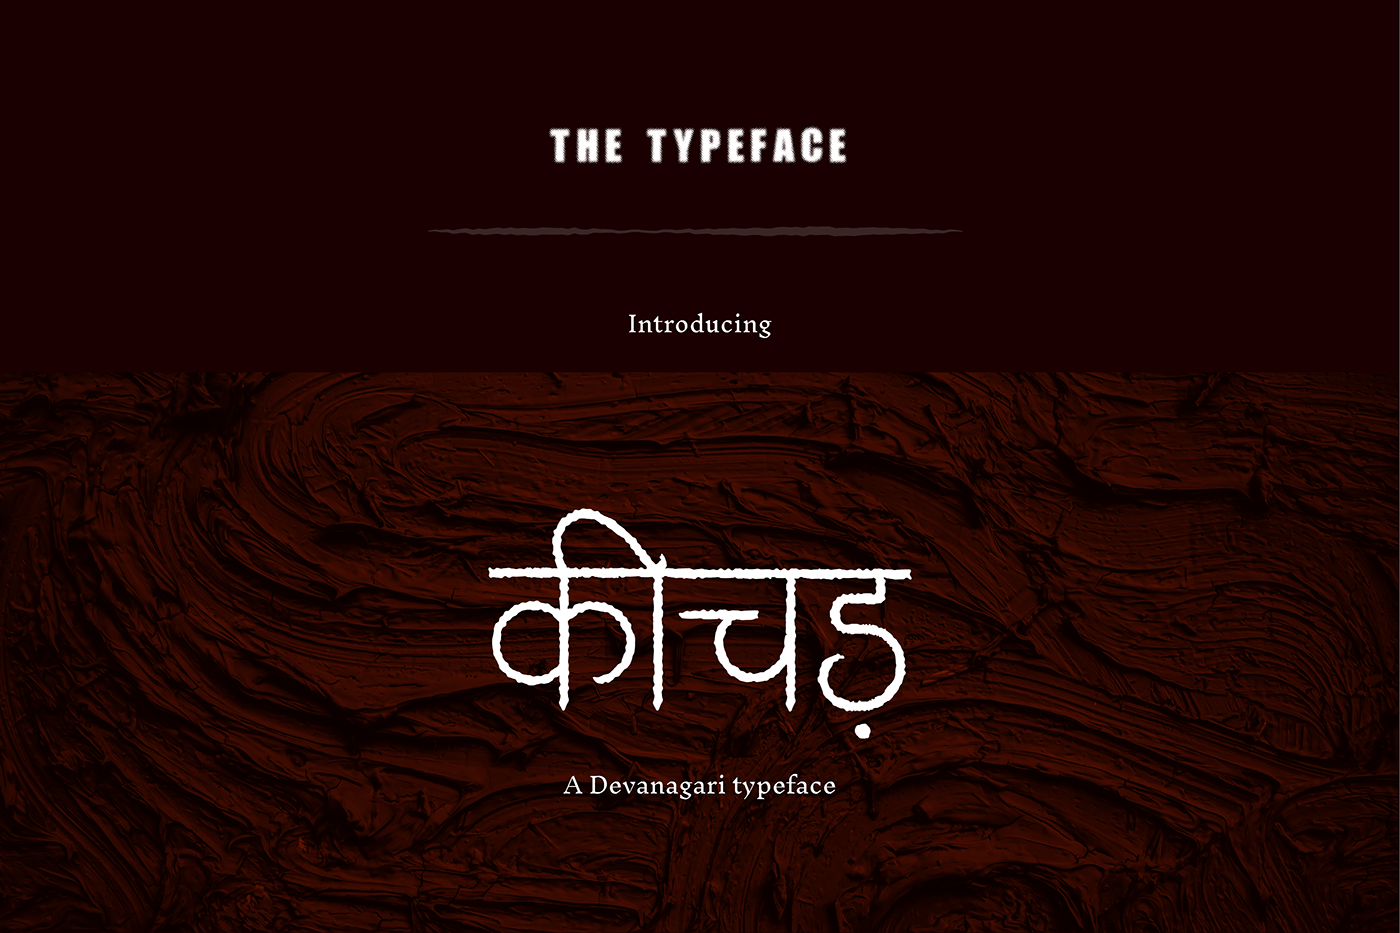 DEVANAGARI TYPEFACE devanagri font font hindi movie movie poster title design tumbbad Typeface